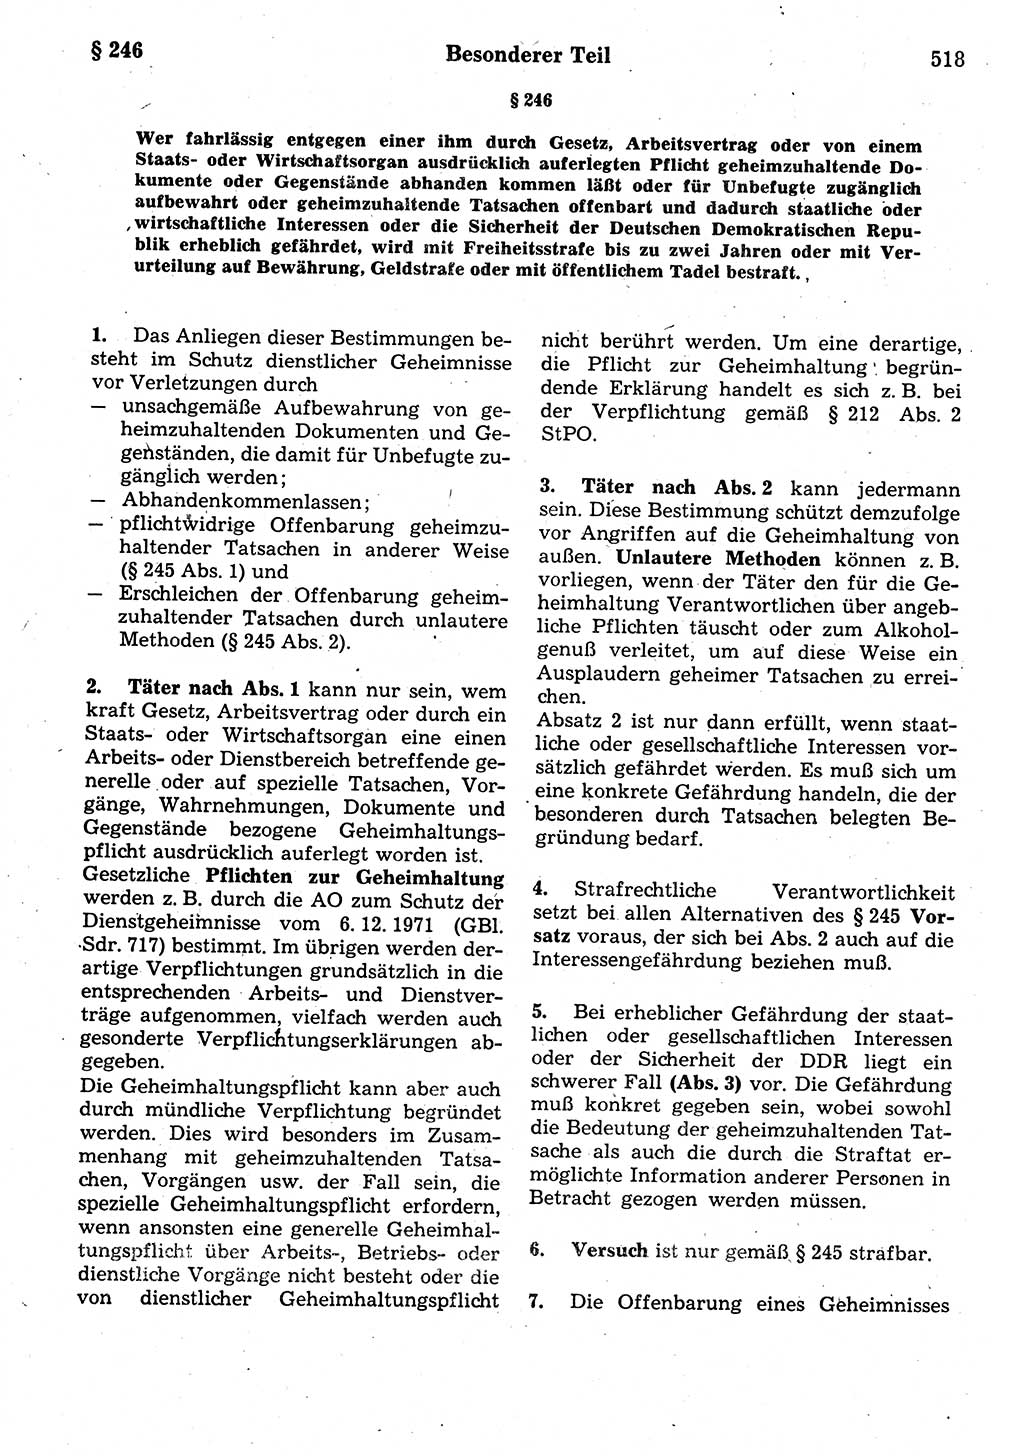 Strafrecht der Deutschen Demokratischen Republik (DDR), Kommentar zum Strafgesetzbuch (StGB) 1987, Seite 518 (Strafr. DDR Komm. StGB 1987, S. 518)